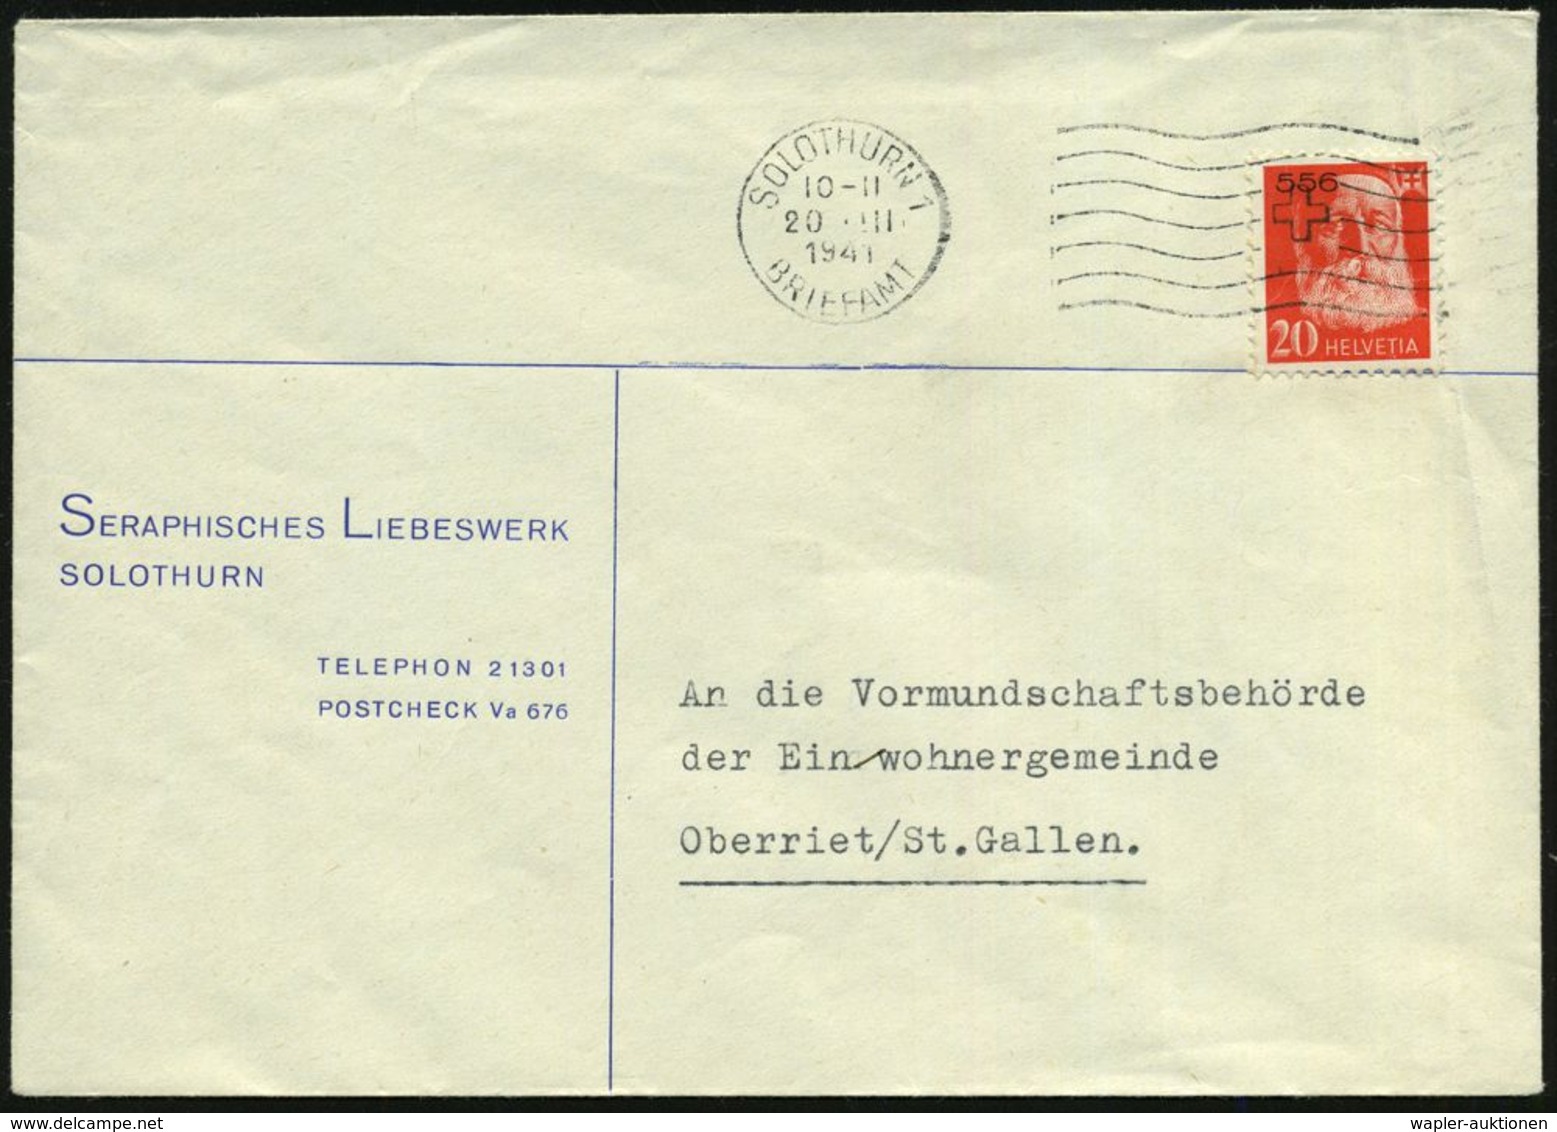 SCHWEIZ 1941 (20.3.) 20 C. Portofreiheit Henri Dunant, EF (Aufdr. "556" = Seraphisches Liebeswerk) Vordr-Bf.: SERAPHISCH - Henry Dunant